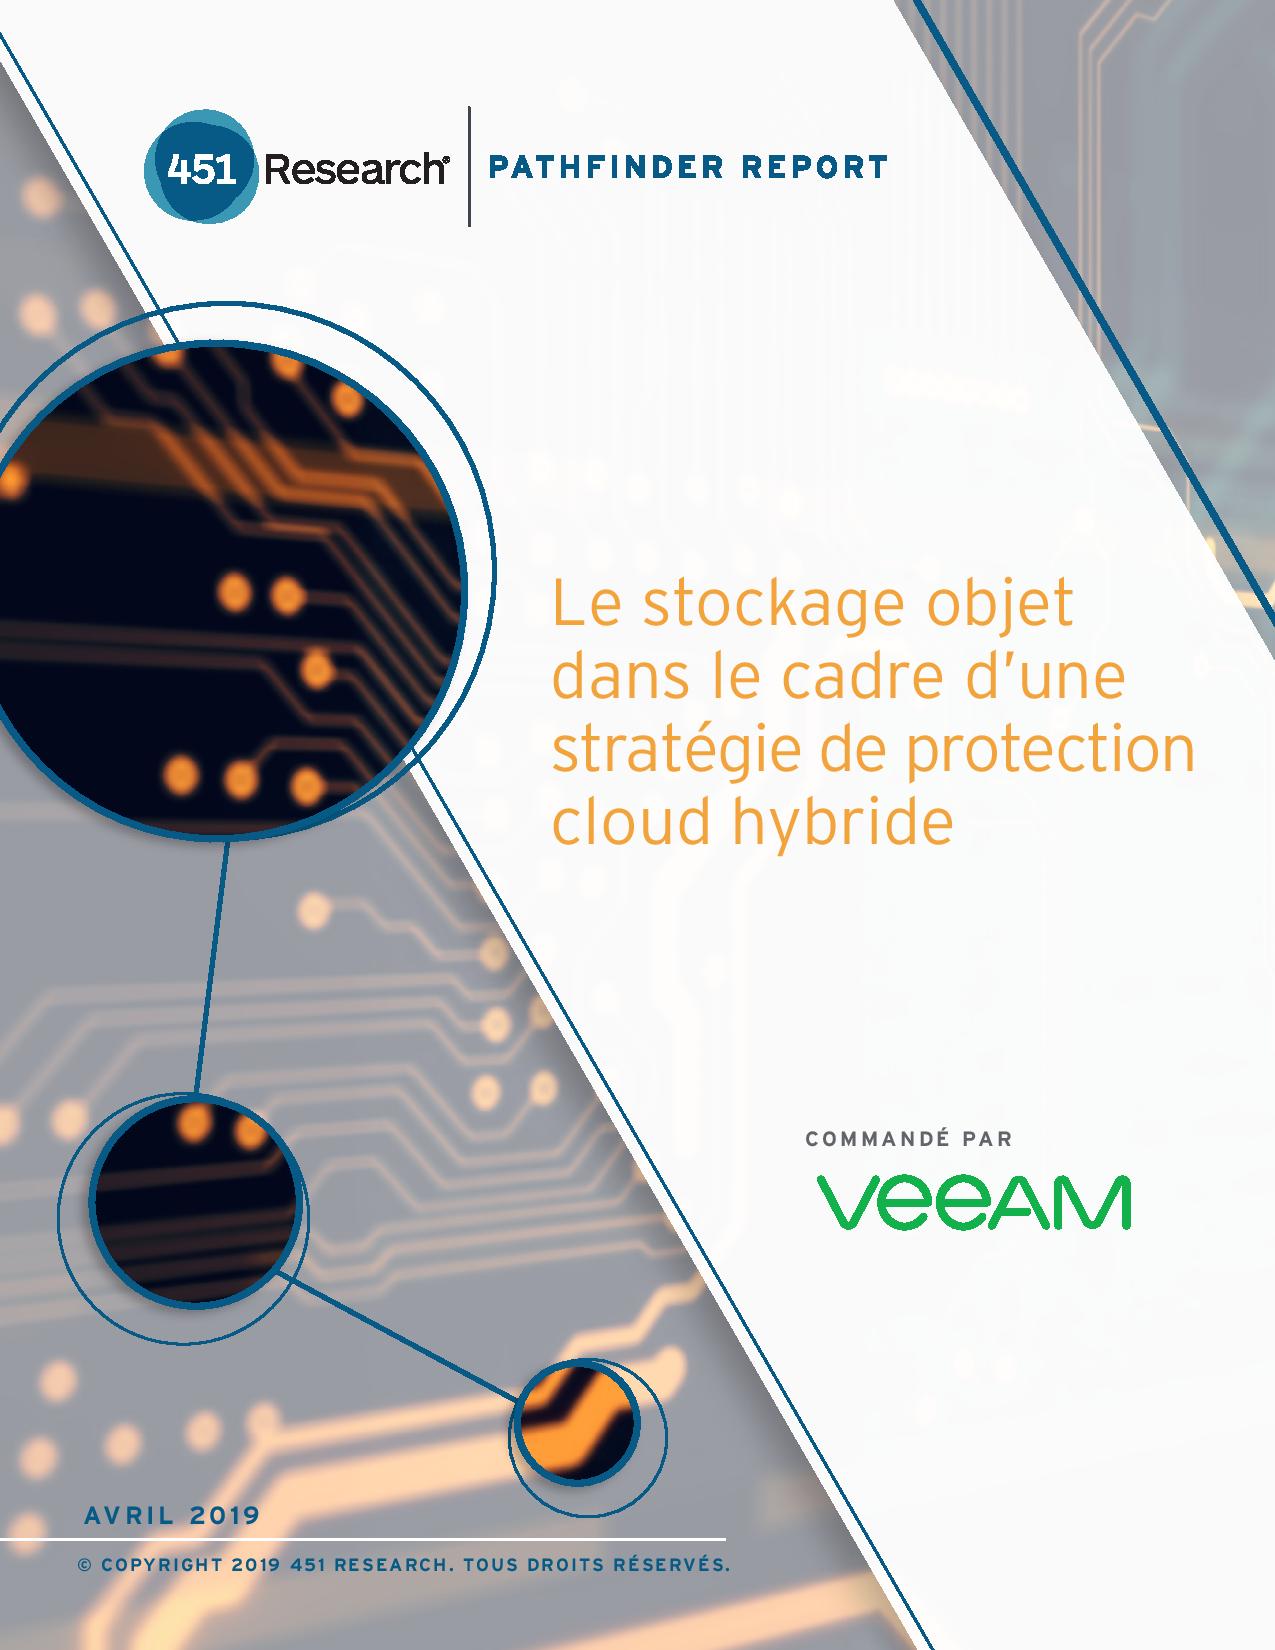 Le stockage objet dans le cadre de votre stratégie de protection cloud hybride